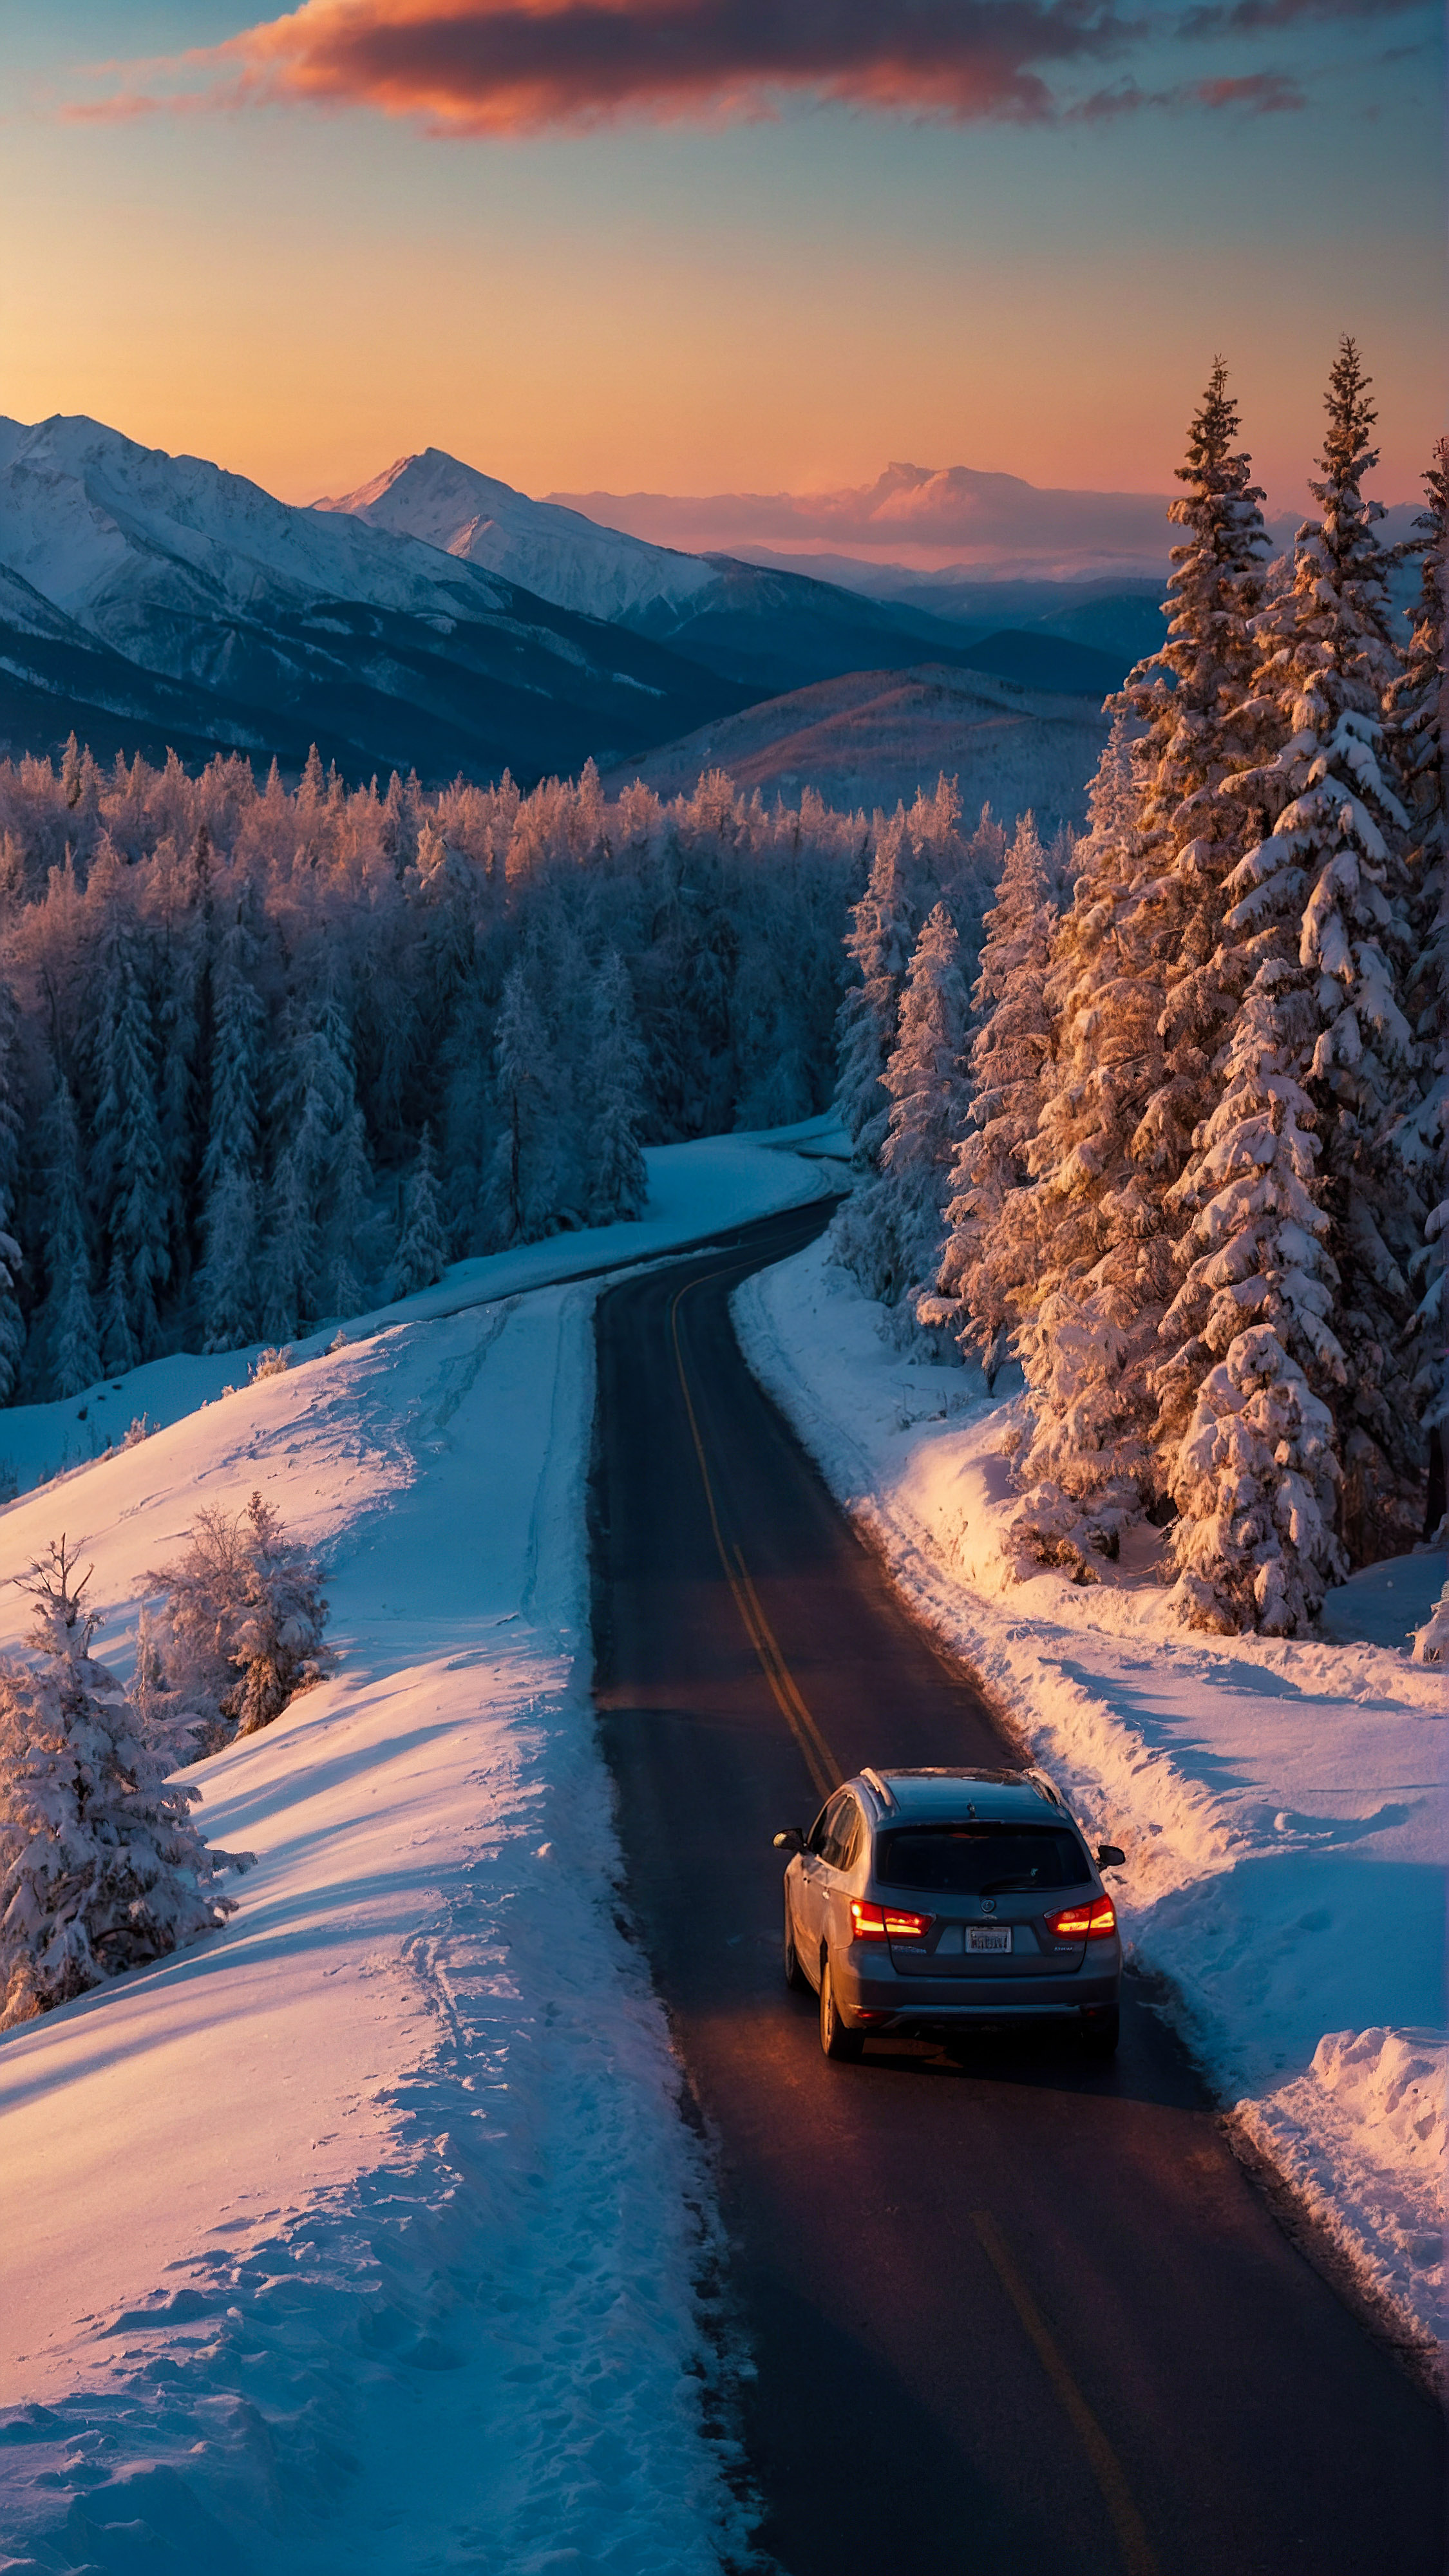 Téléchargez ce beau fond d'écran esthétique cool pour iPhone, un paysage d'hiver vibrant au crépuscule, présentant une route sinueuse avec une voiture en déplacement, entourée d'arbres et de montagnes couverts de neige sous la lueur du soleil couchant.